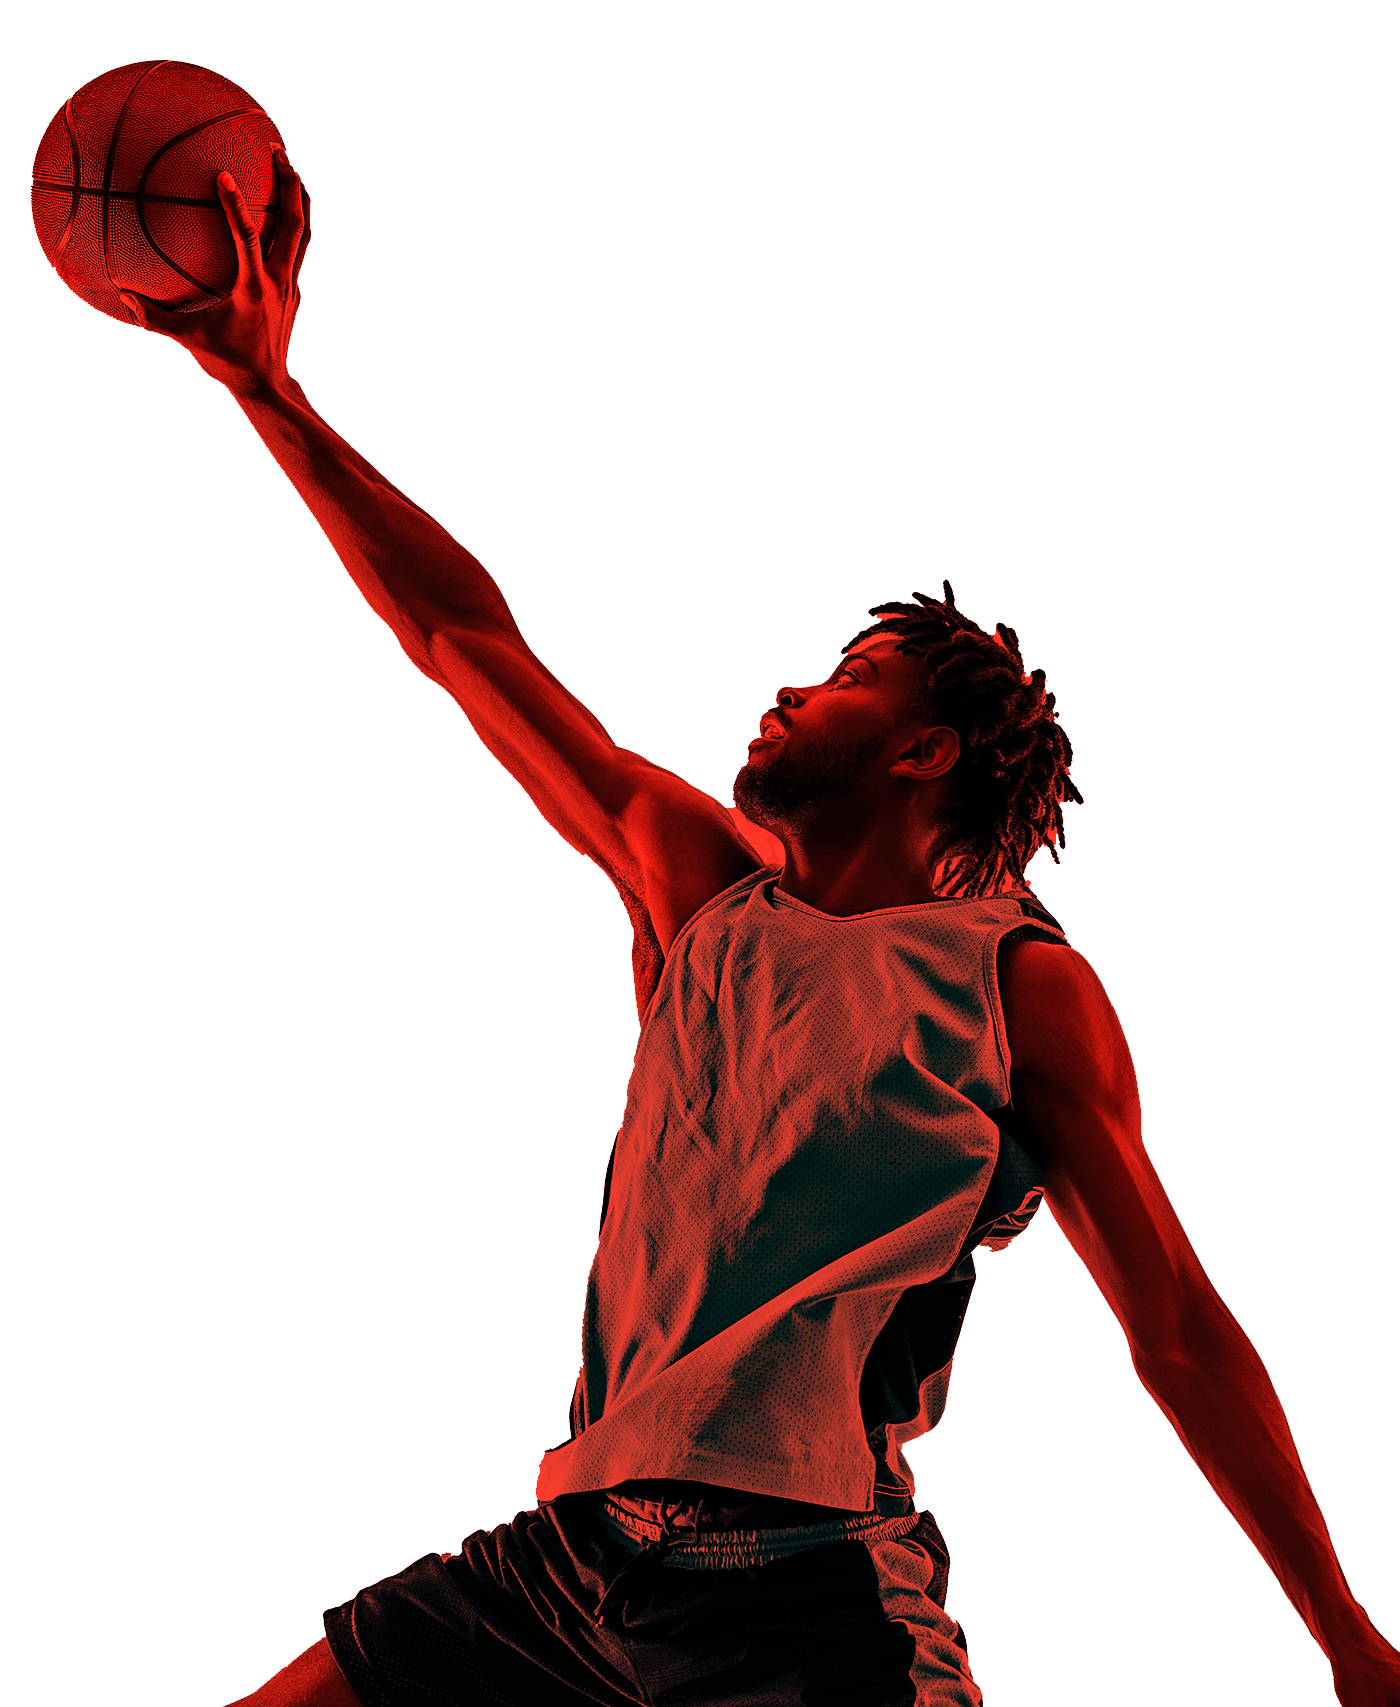 En la foto, un basquetbolista extiende uno de sus brazos sosteniendo la pelota para encestar. 